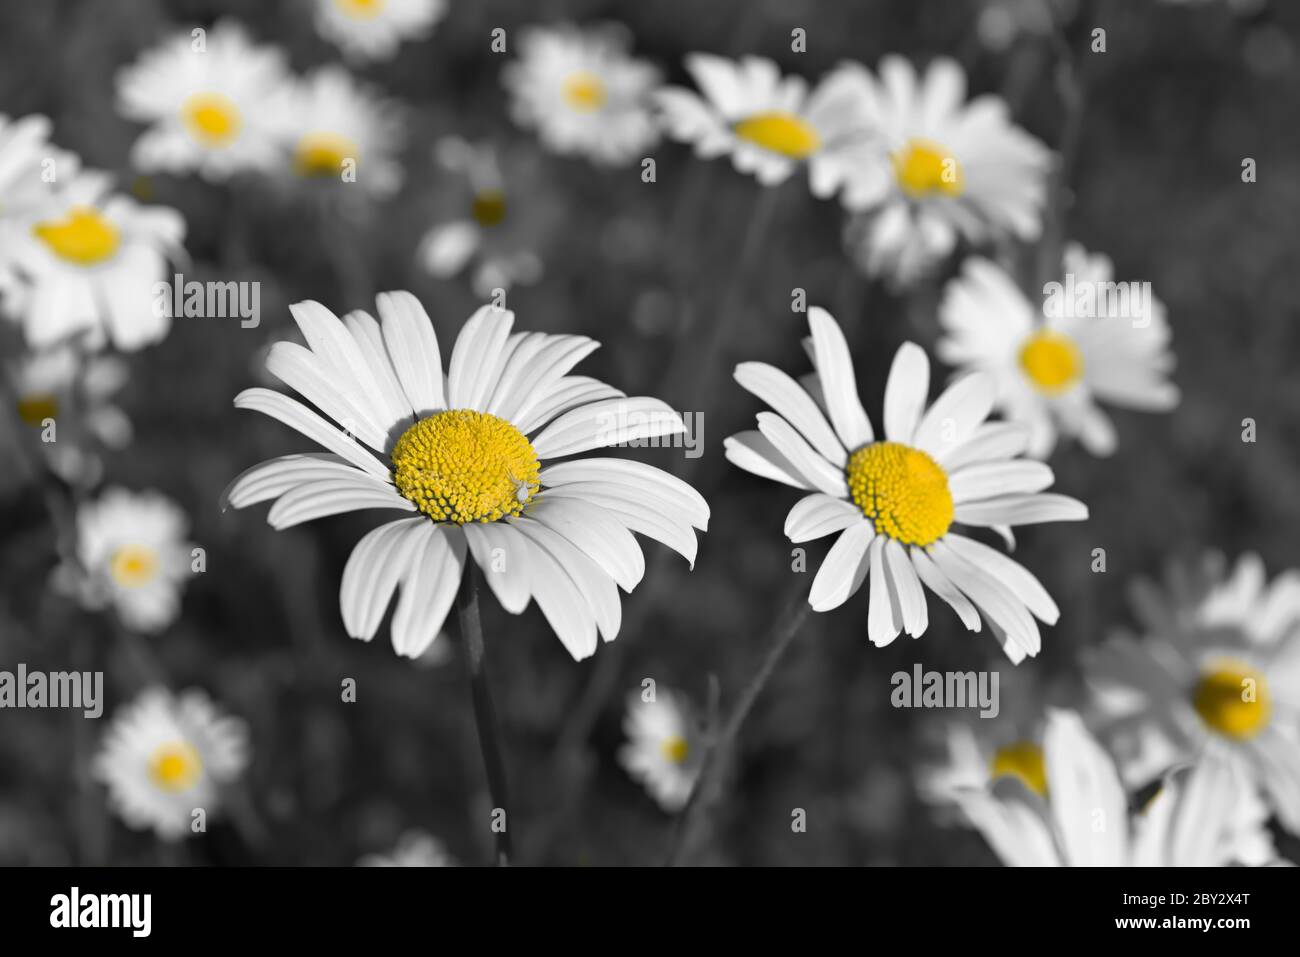 Gelbtöne tauchen in diesem entsättierten Bild wilder shasta Gänseblümchen auf. Eine kleine weiße Spinne liegt auf dem Gänseblümchen am nächsten. Stockfoto